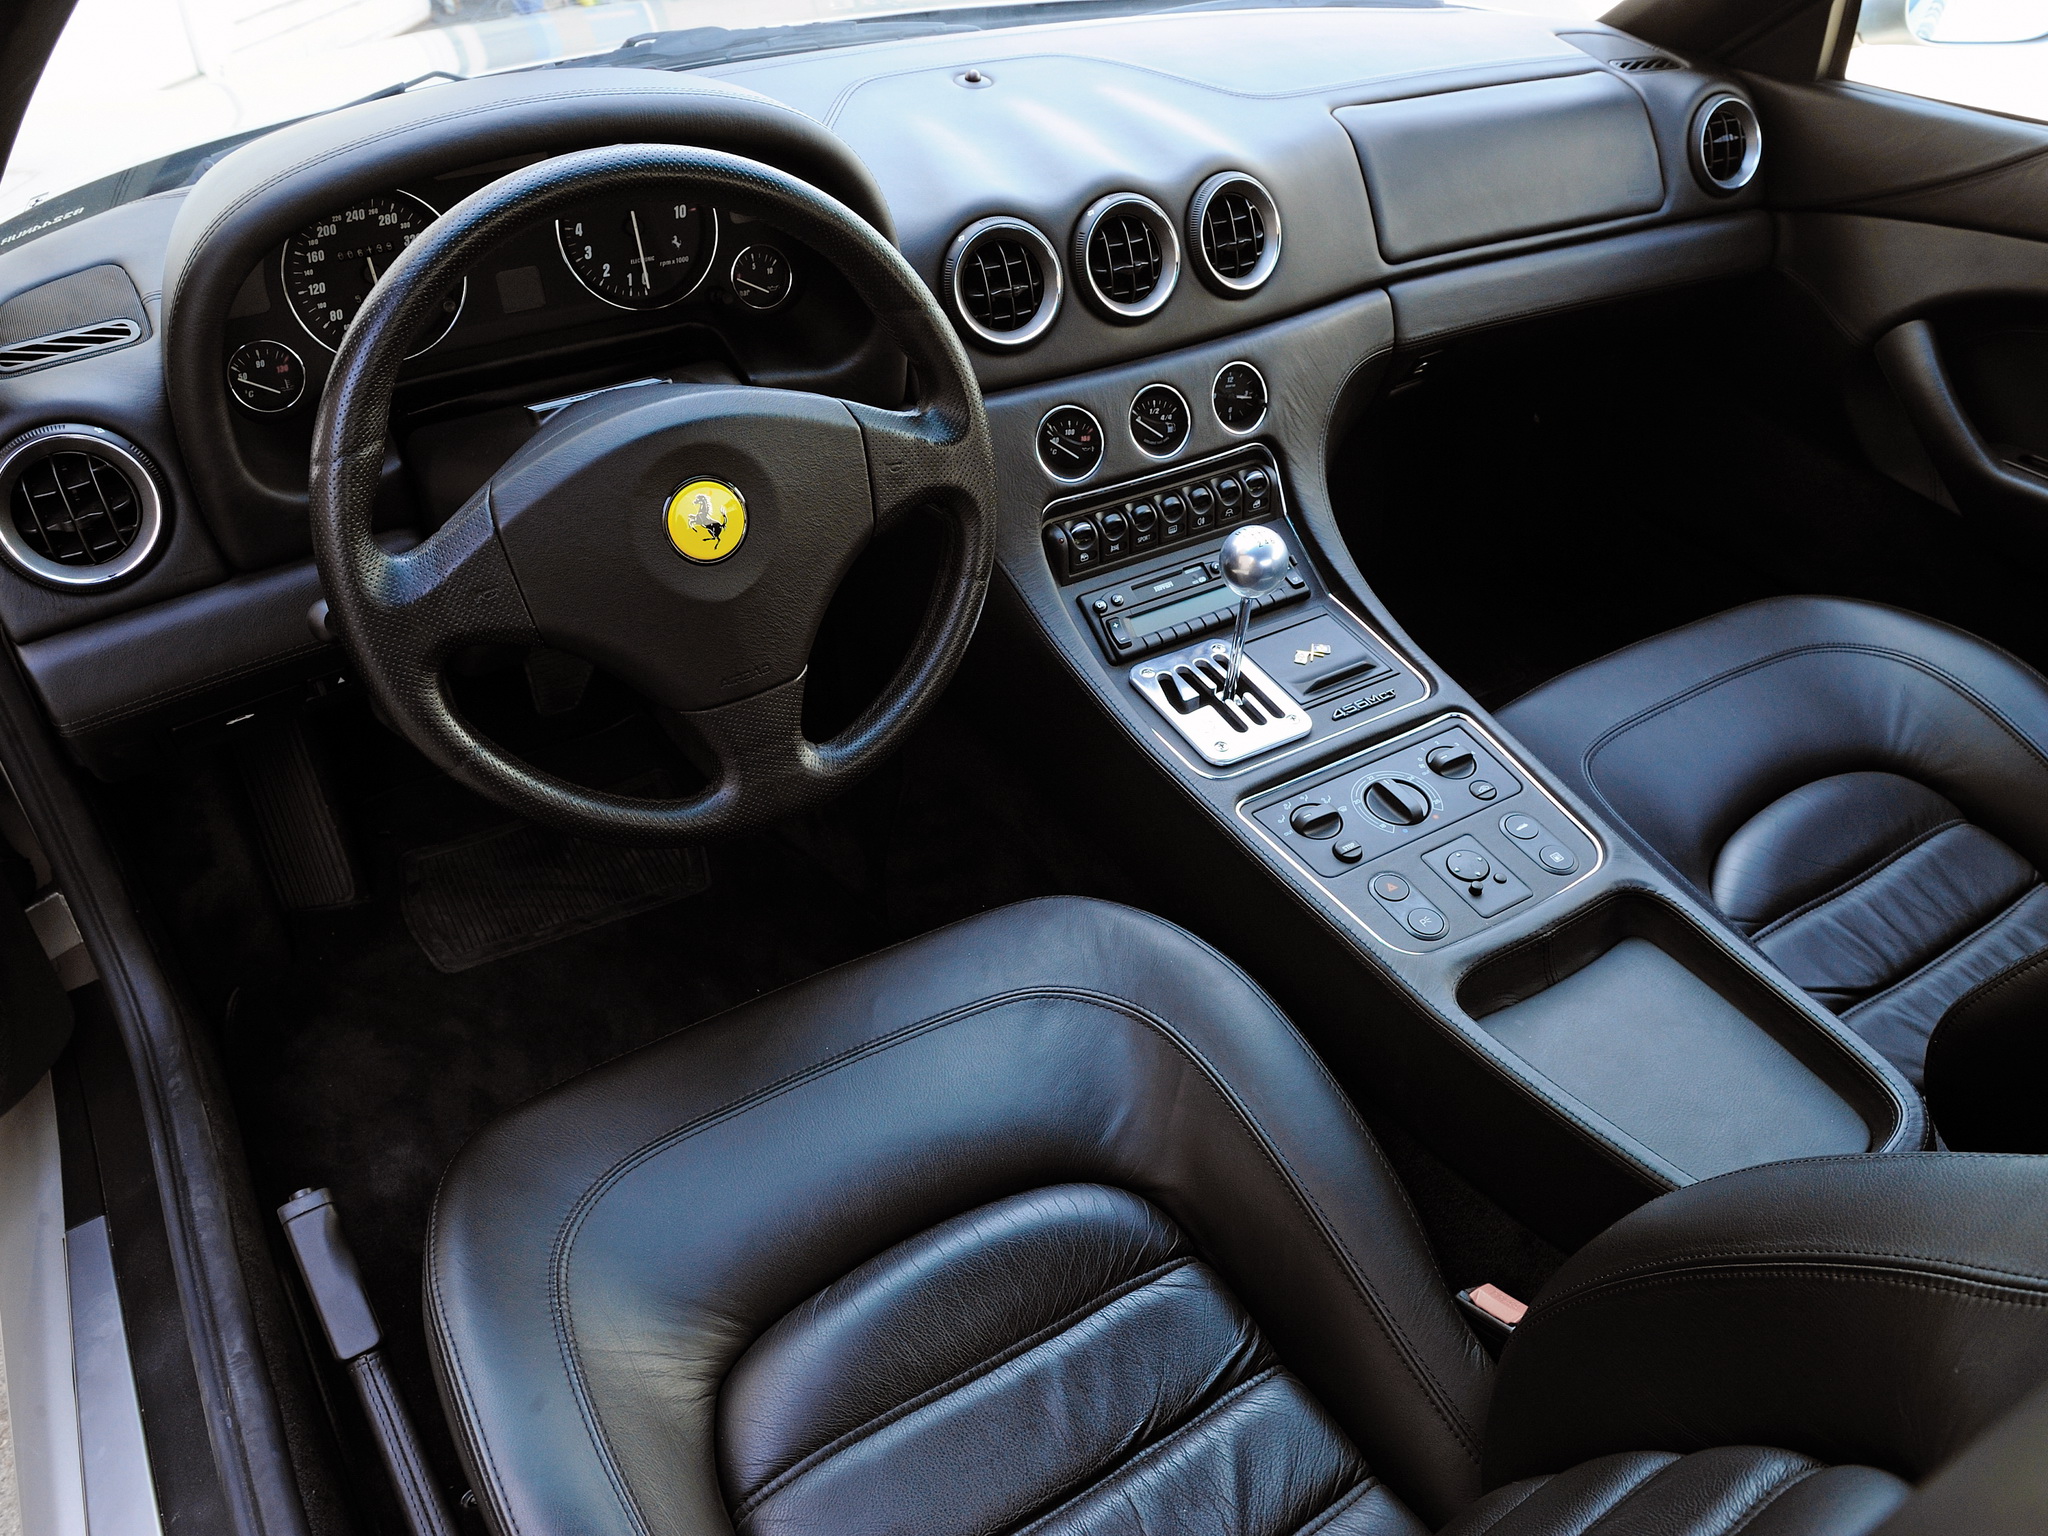 1998 03, Ferrari, 456, M, G t, Supercar, 1998, 2003, Interior Wallpaper